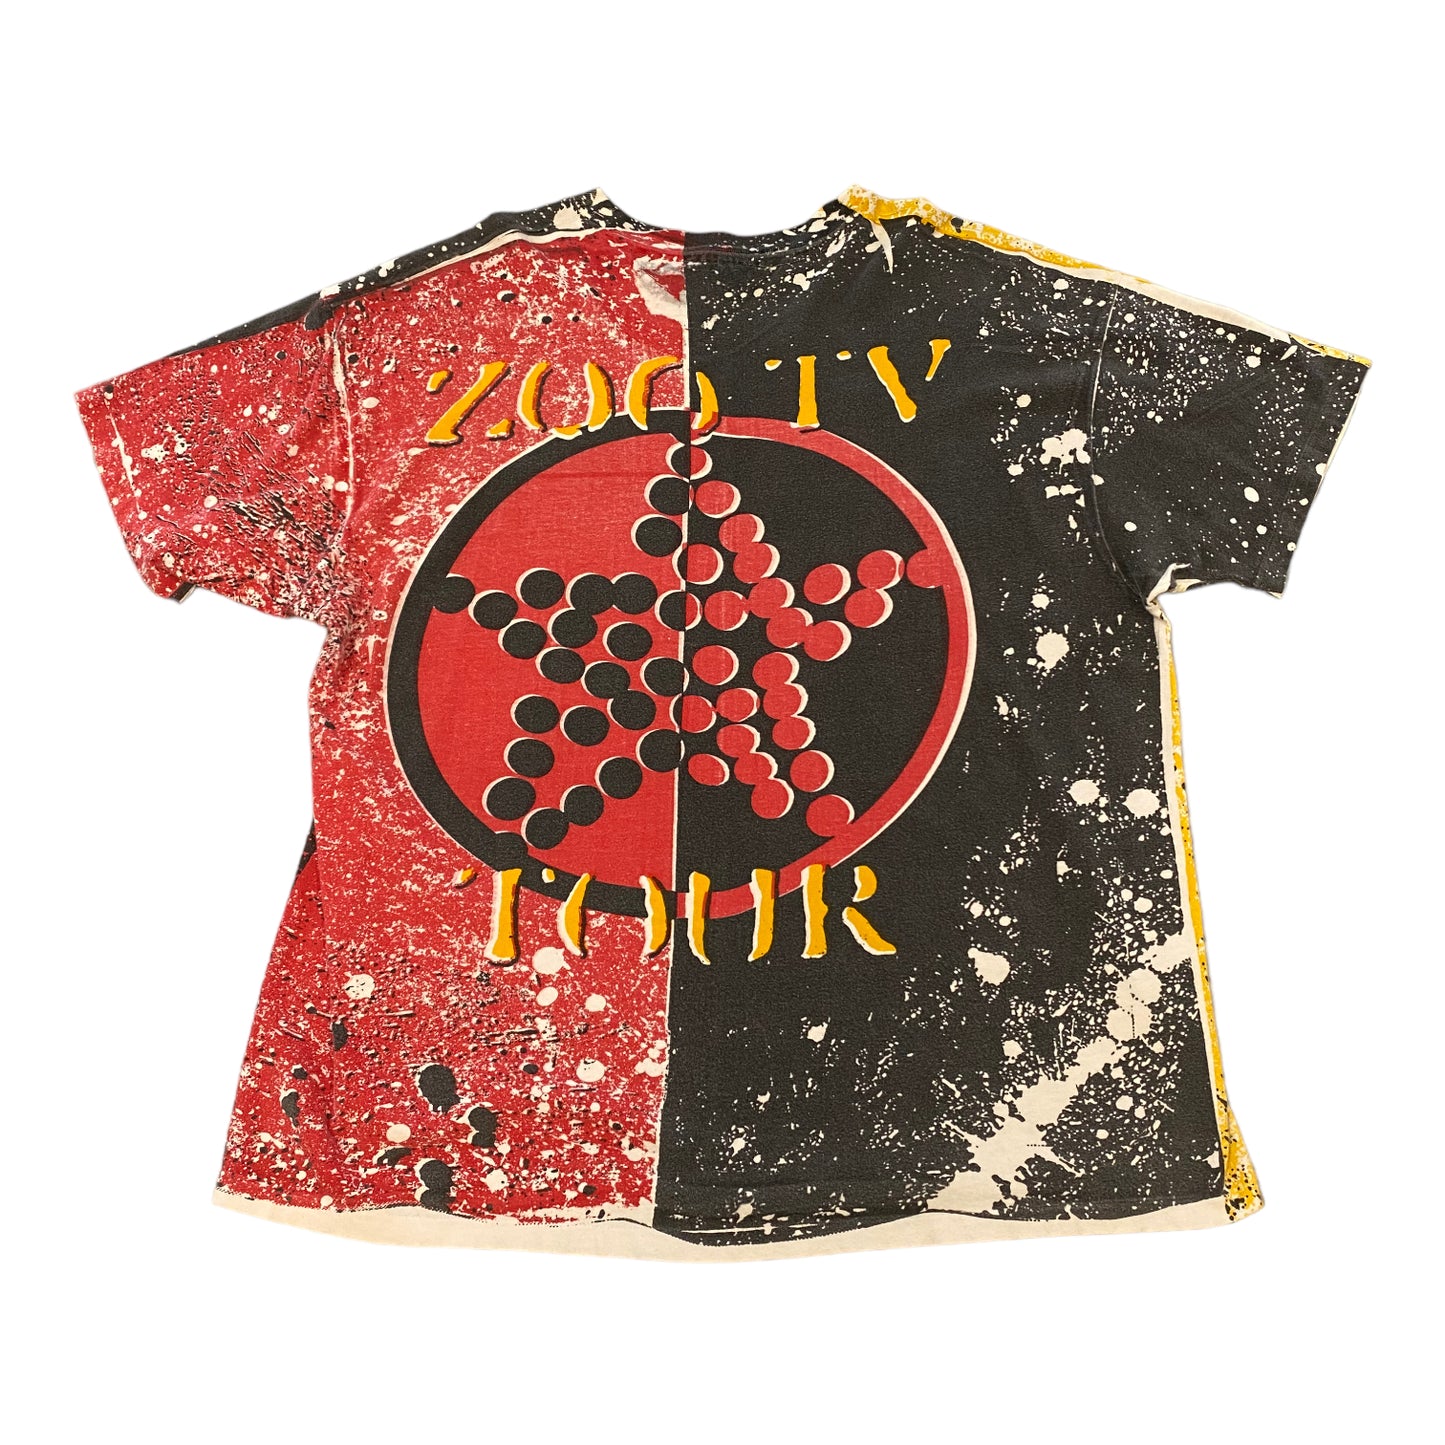 1991 U2 ZOO TV Tour Vintage Tee